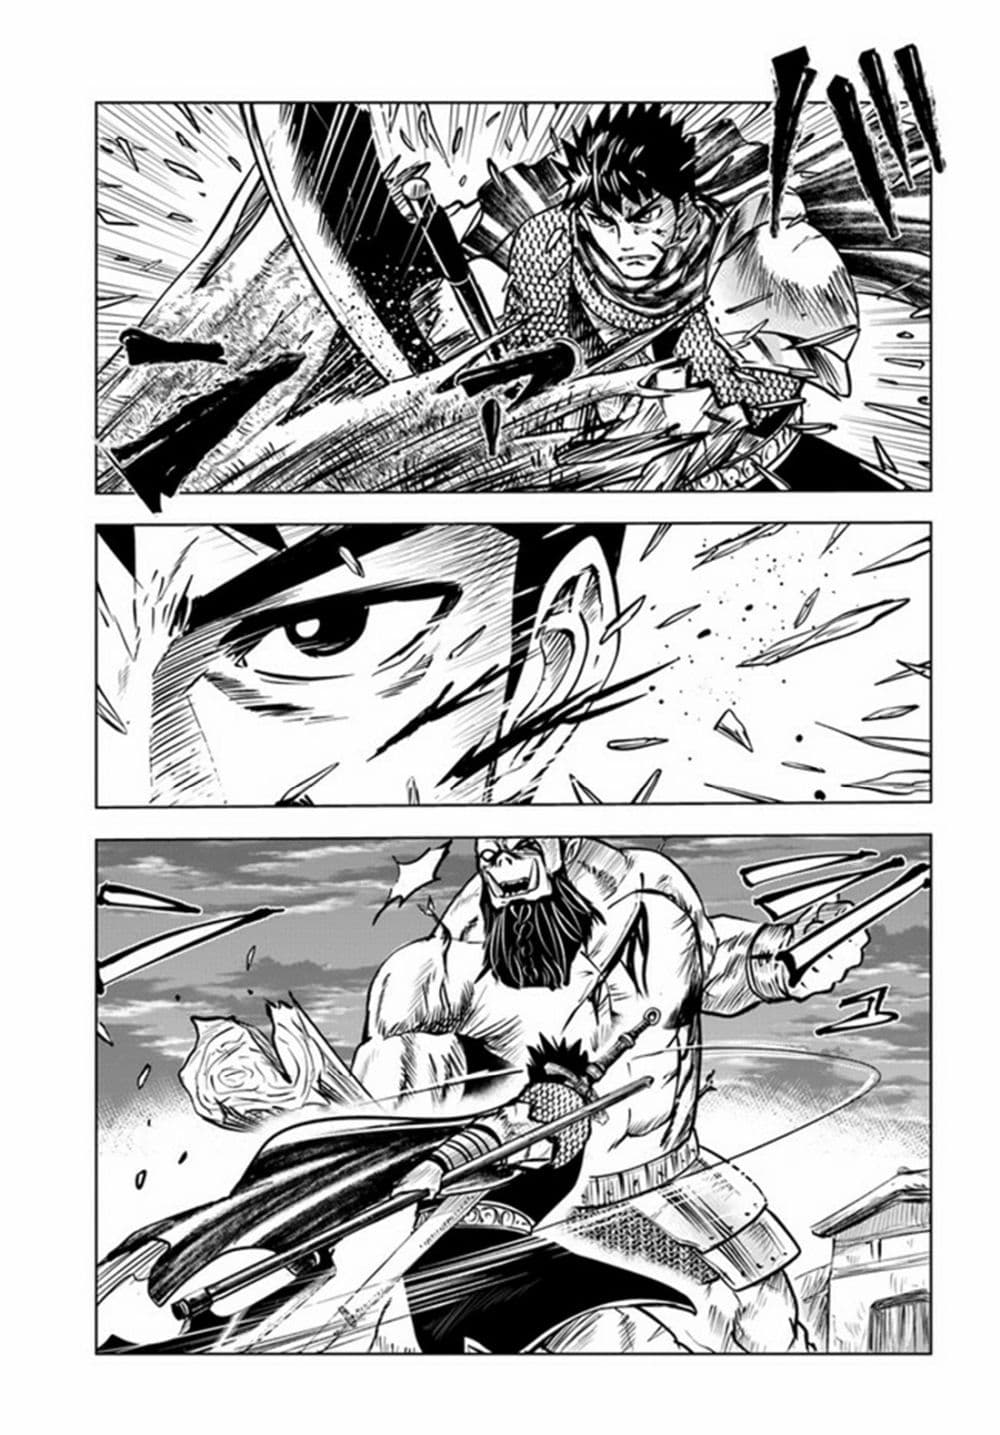 Oukoku e Tsuzuku Michi dorei Kenshi no Nariagari Eiyutan (Haaremu Raifu) - Road to the Kingdom Slave Swordsman the Rise of Heroes - Harem Life 26-26